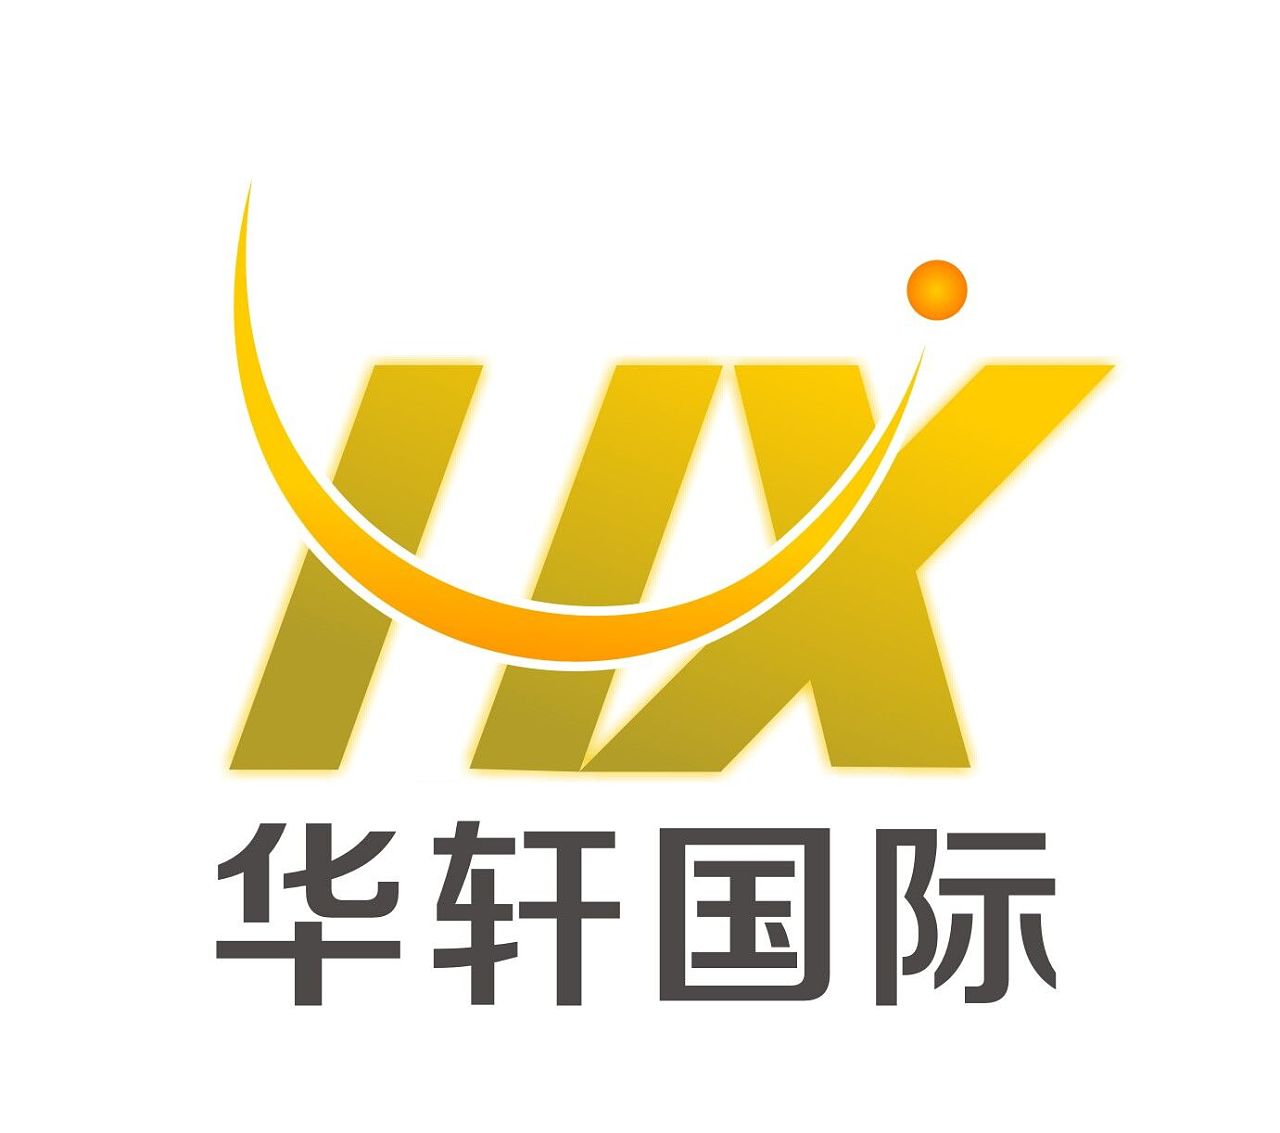 中国联通高清logo标志png图片-XD素材中文网